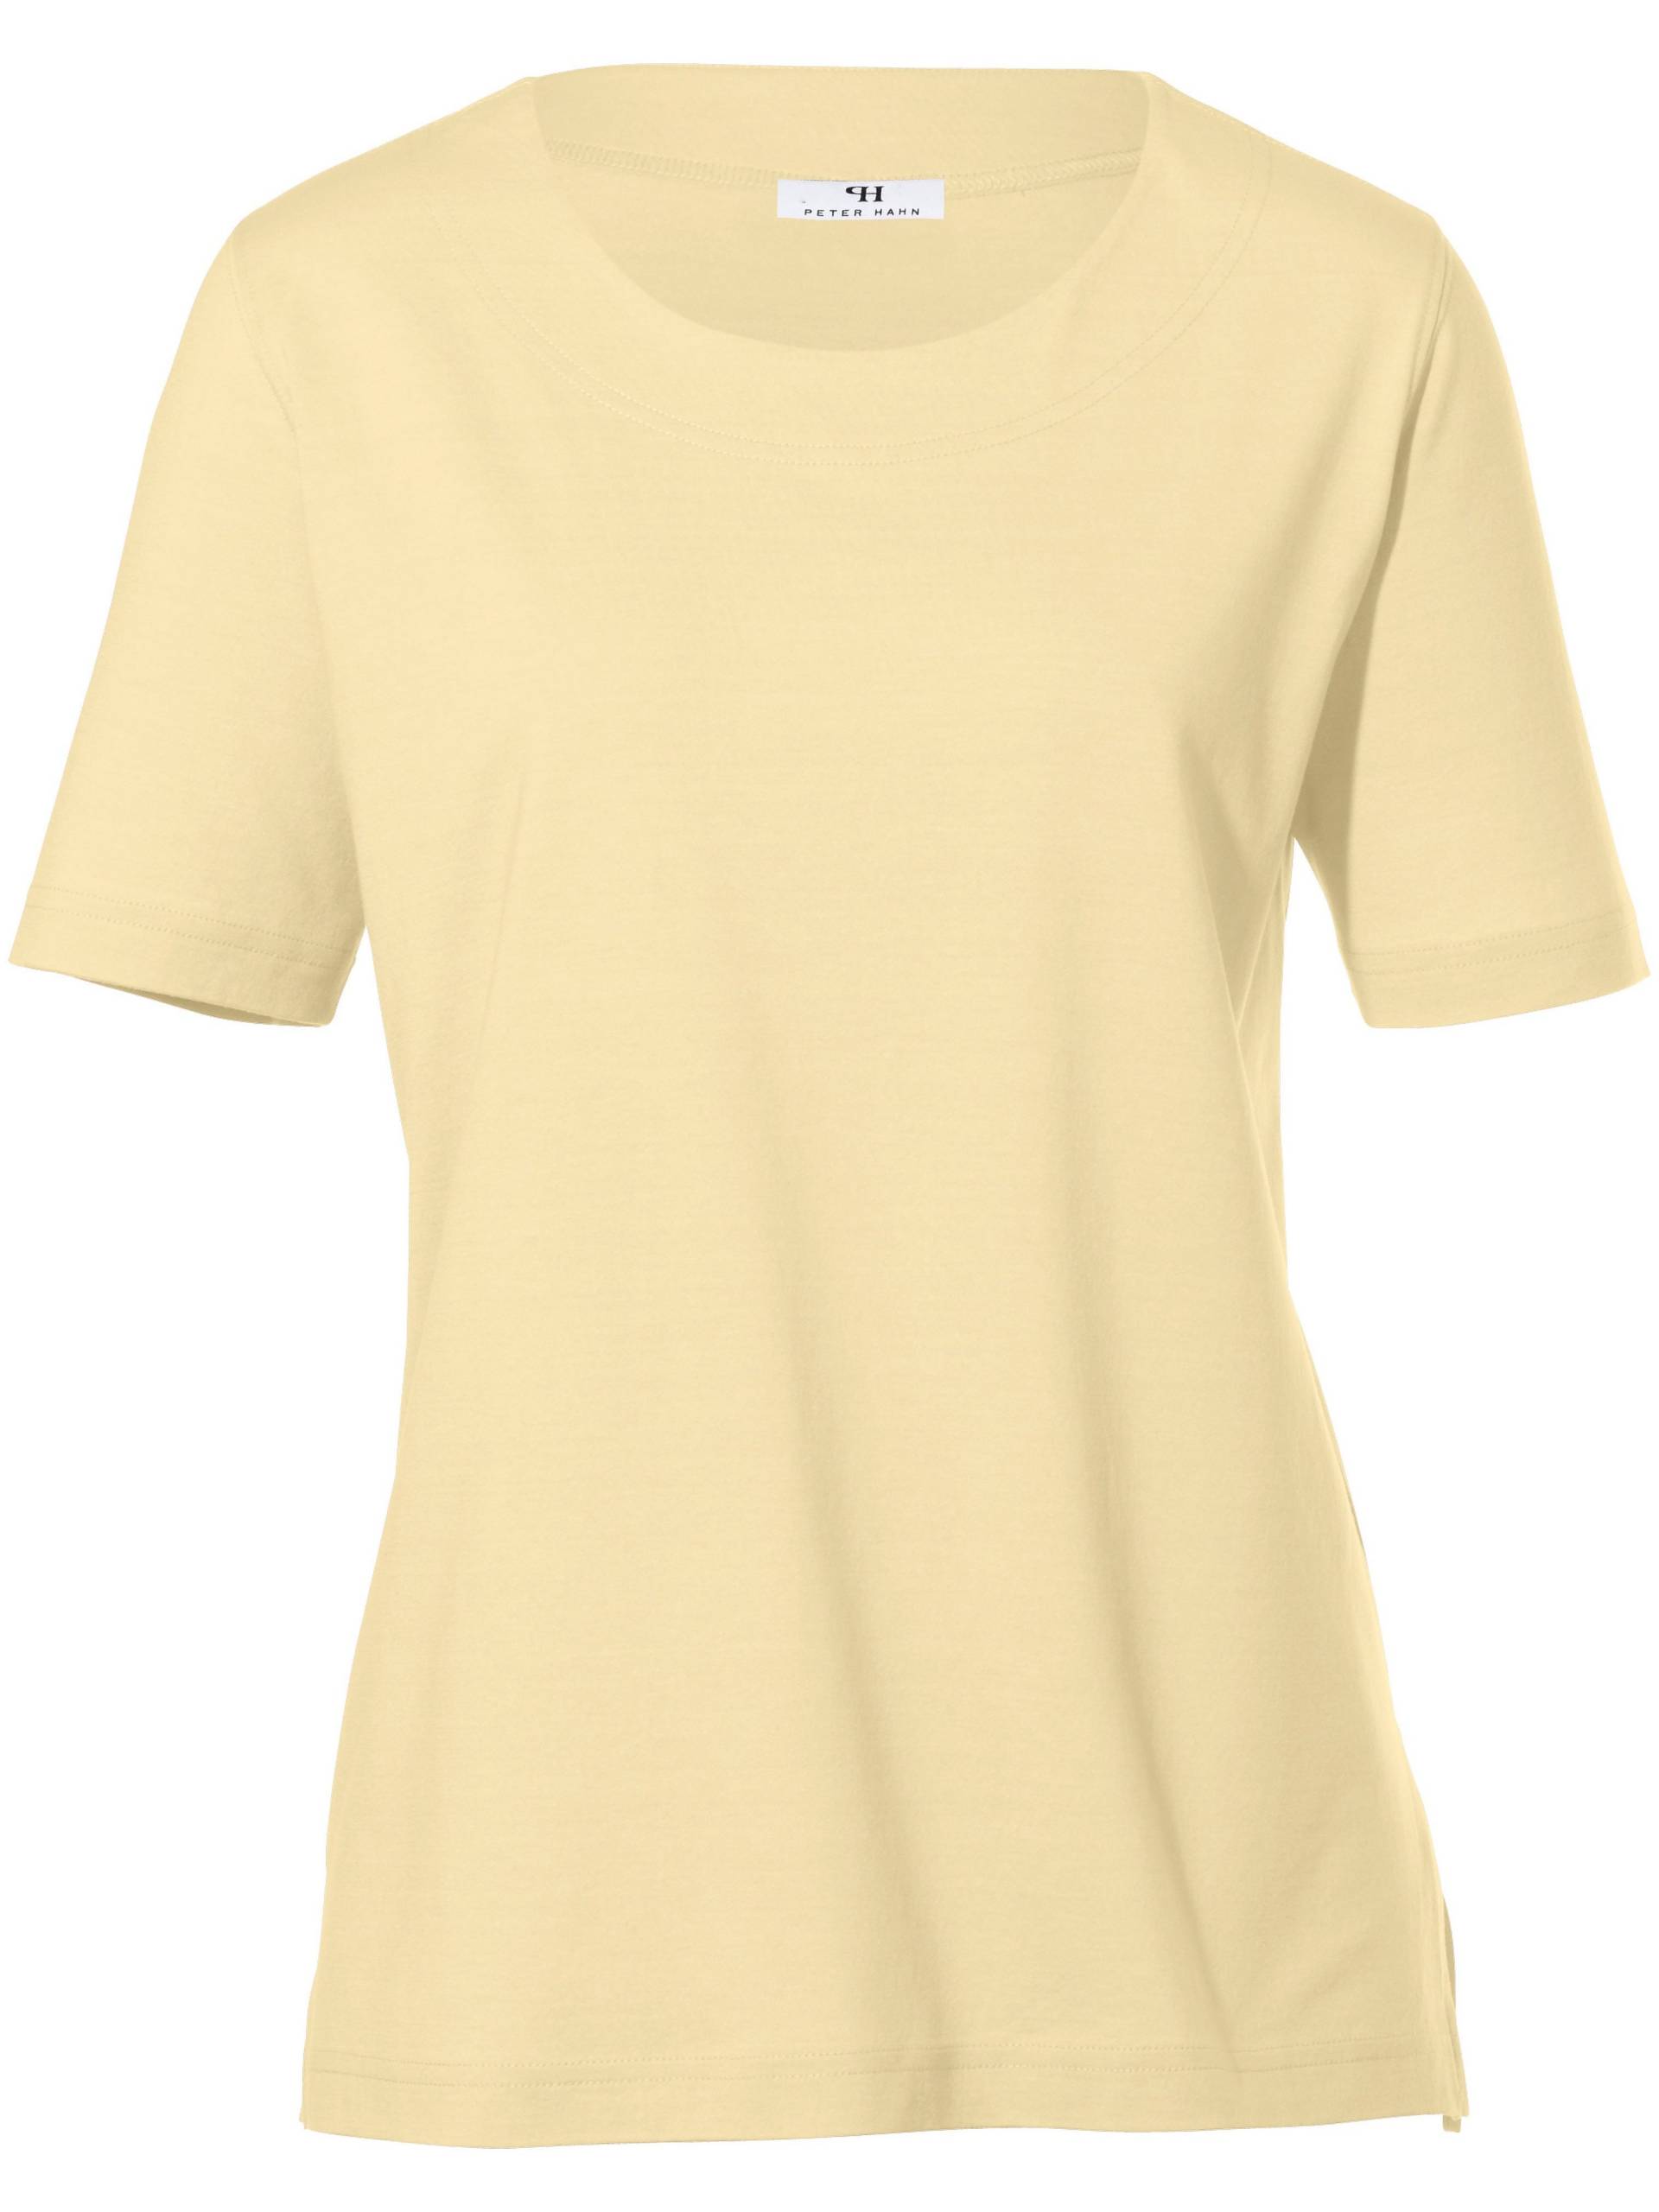 Rundhals-Shirt 1/2 Arm Peter Hahn gelb Größe: 48 von Peter Hahn